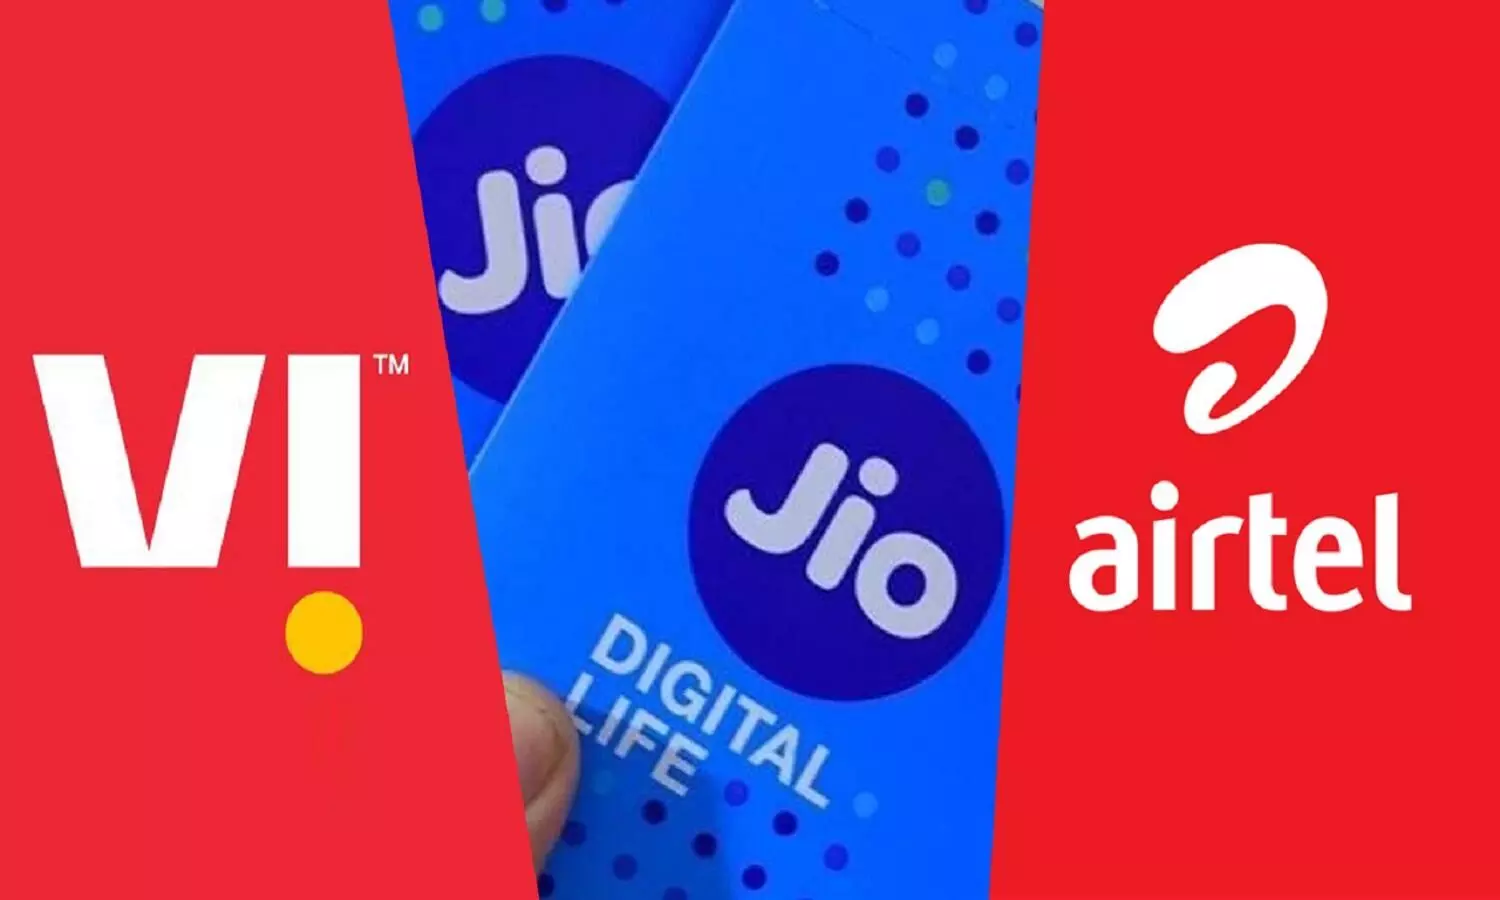 jio, airtel और Vi का शानदार प्रीपेड प्लान